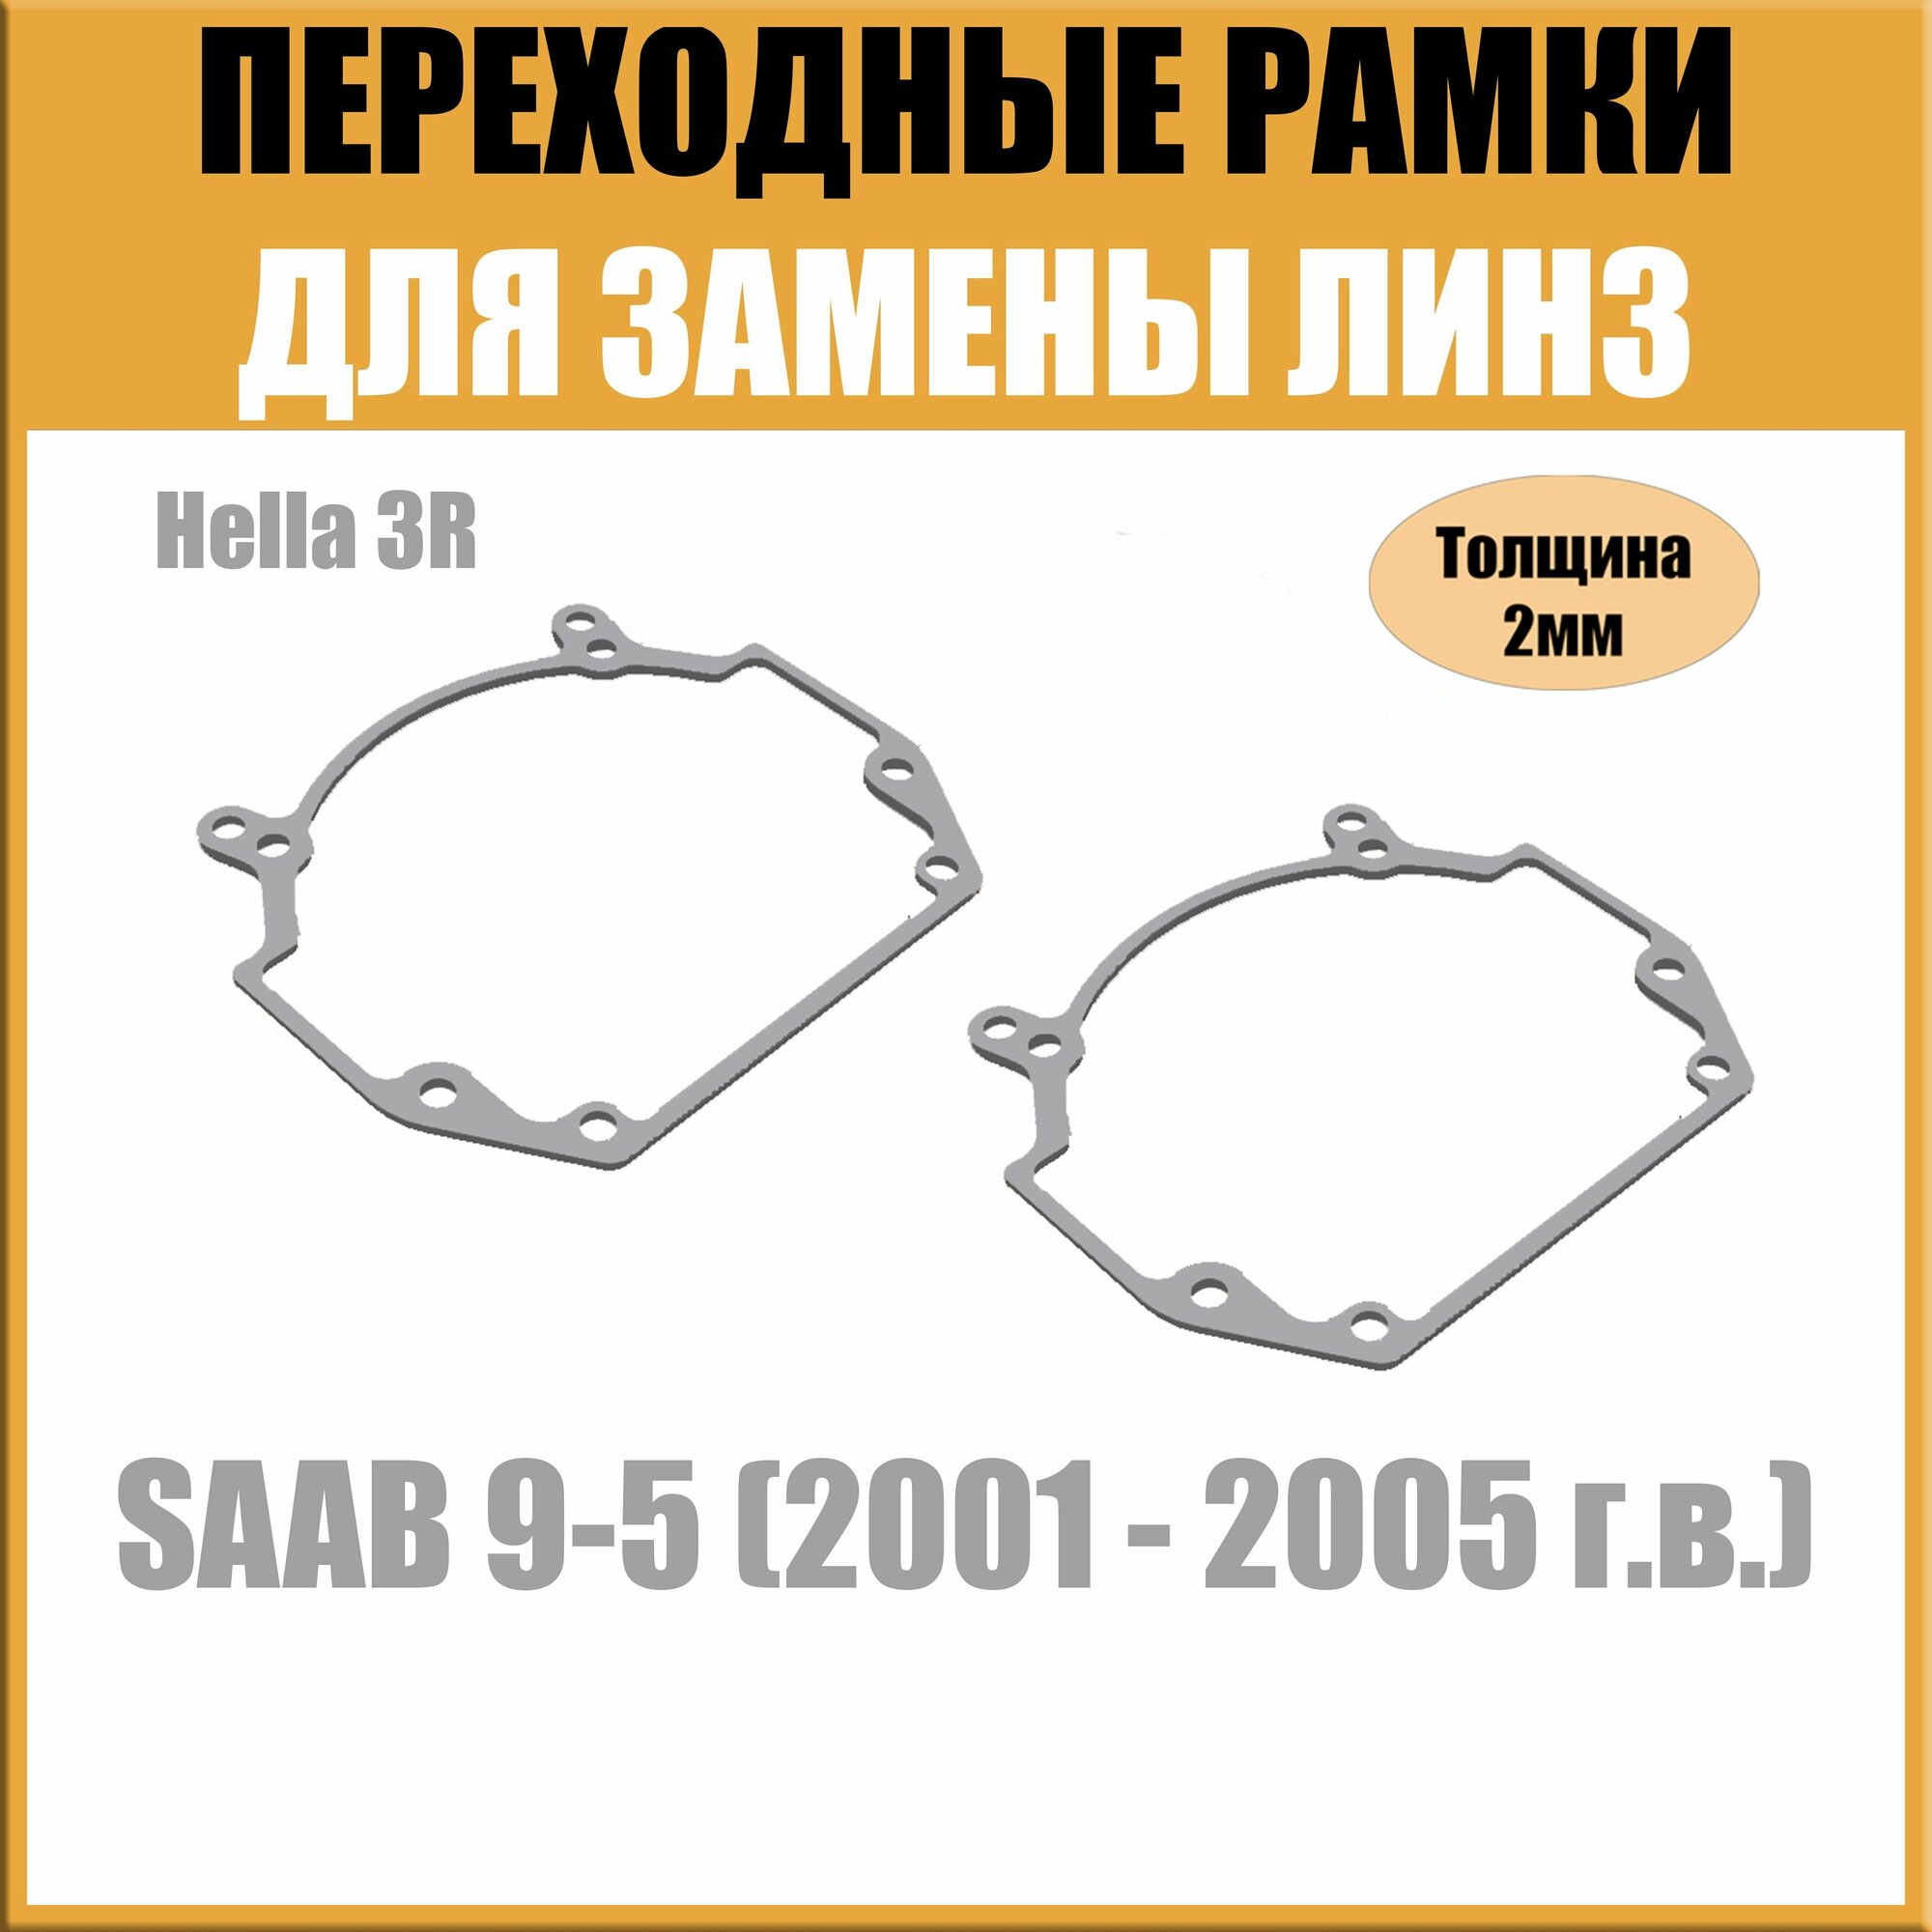 Переходные рамки для линз на SAAB 9-5 (2001 - 2005 г. в.) под модуль Hella 3R/Hella 3 (Комплект 2шт)